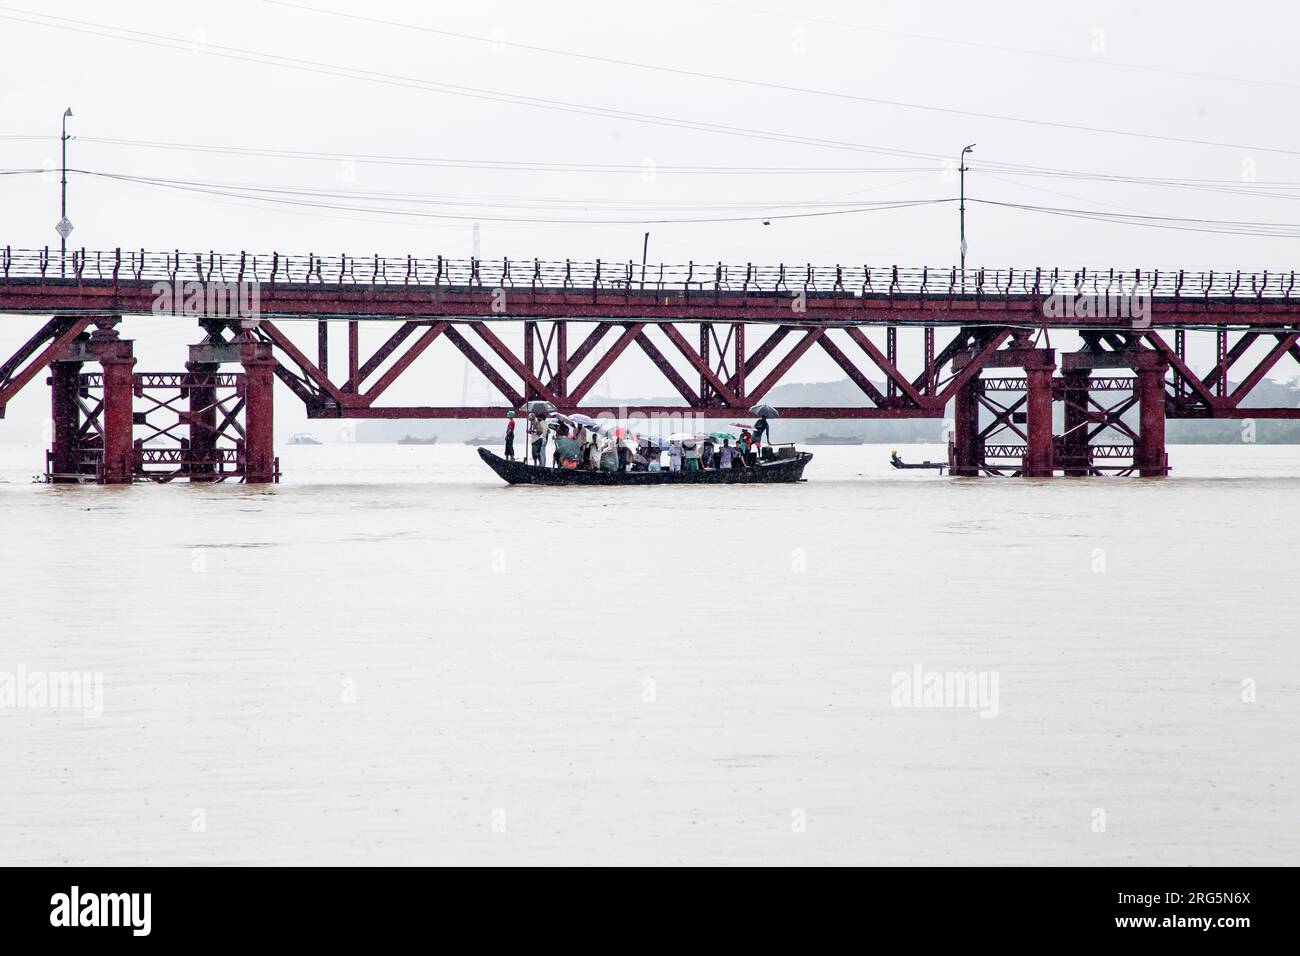 In der Regenzeit, in der die Kalurghat-Brücke drei Monate lang unzugänglich war, stehen die Menschen vor Not, da sie auf kleine Boote angewiesen sind, um den Fluss zu überqueren. Der ständige Kampf, durch das Wasser zu navigieren, erzeugt ein Gefühl von Leid und Unannehmlichkeiten für die betroffenen Gemeinden. Trotz der Herausforderungen ist ihre Widerstandsfähigkeit deutlich spürbar, da sie die Schwierigkeiten ertragen, ihr Ziel zu erreichen. Chittagong, Bangladesch. Stockfoto